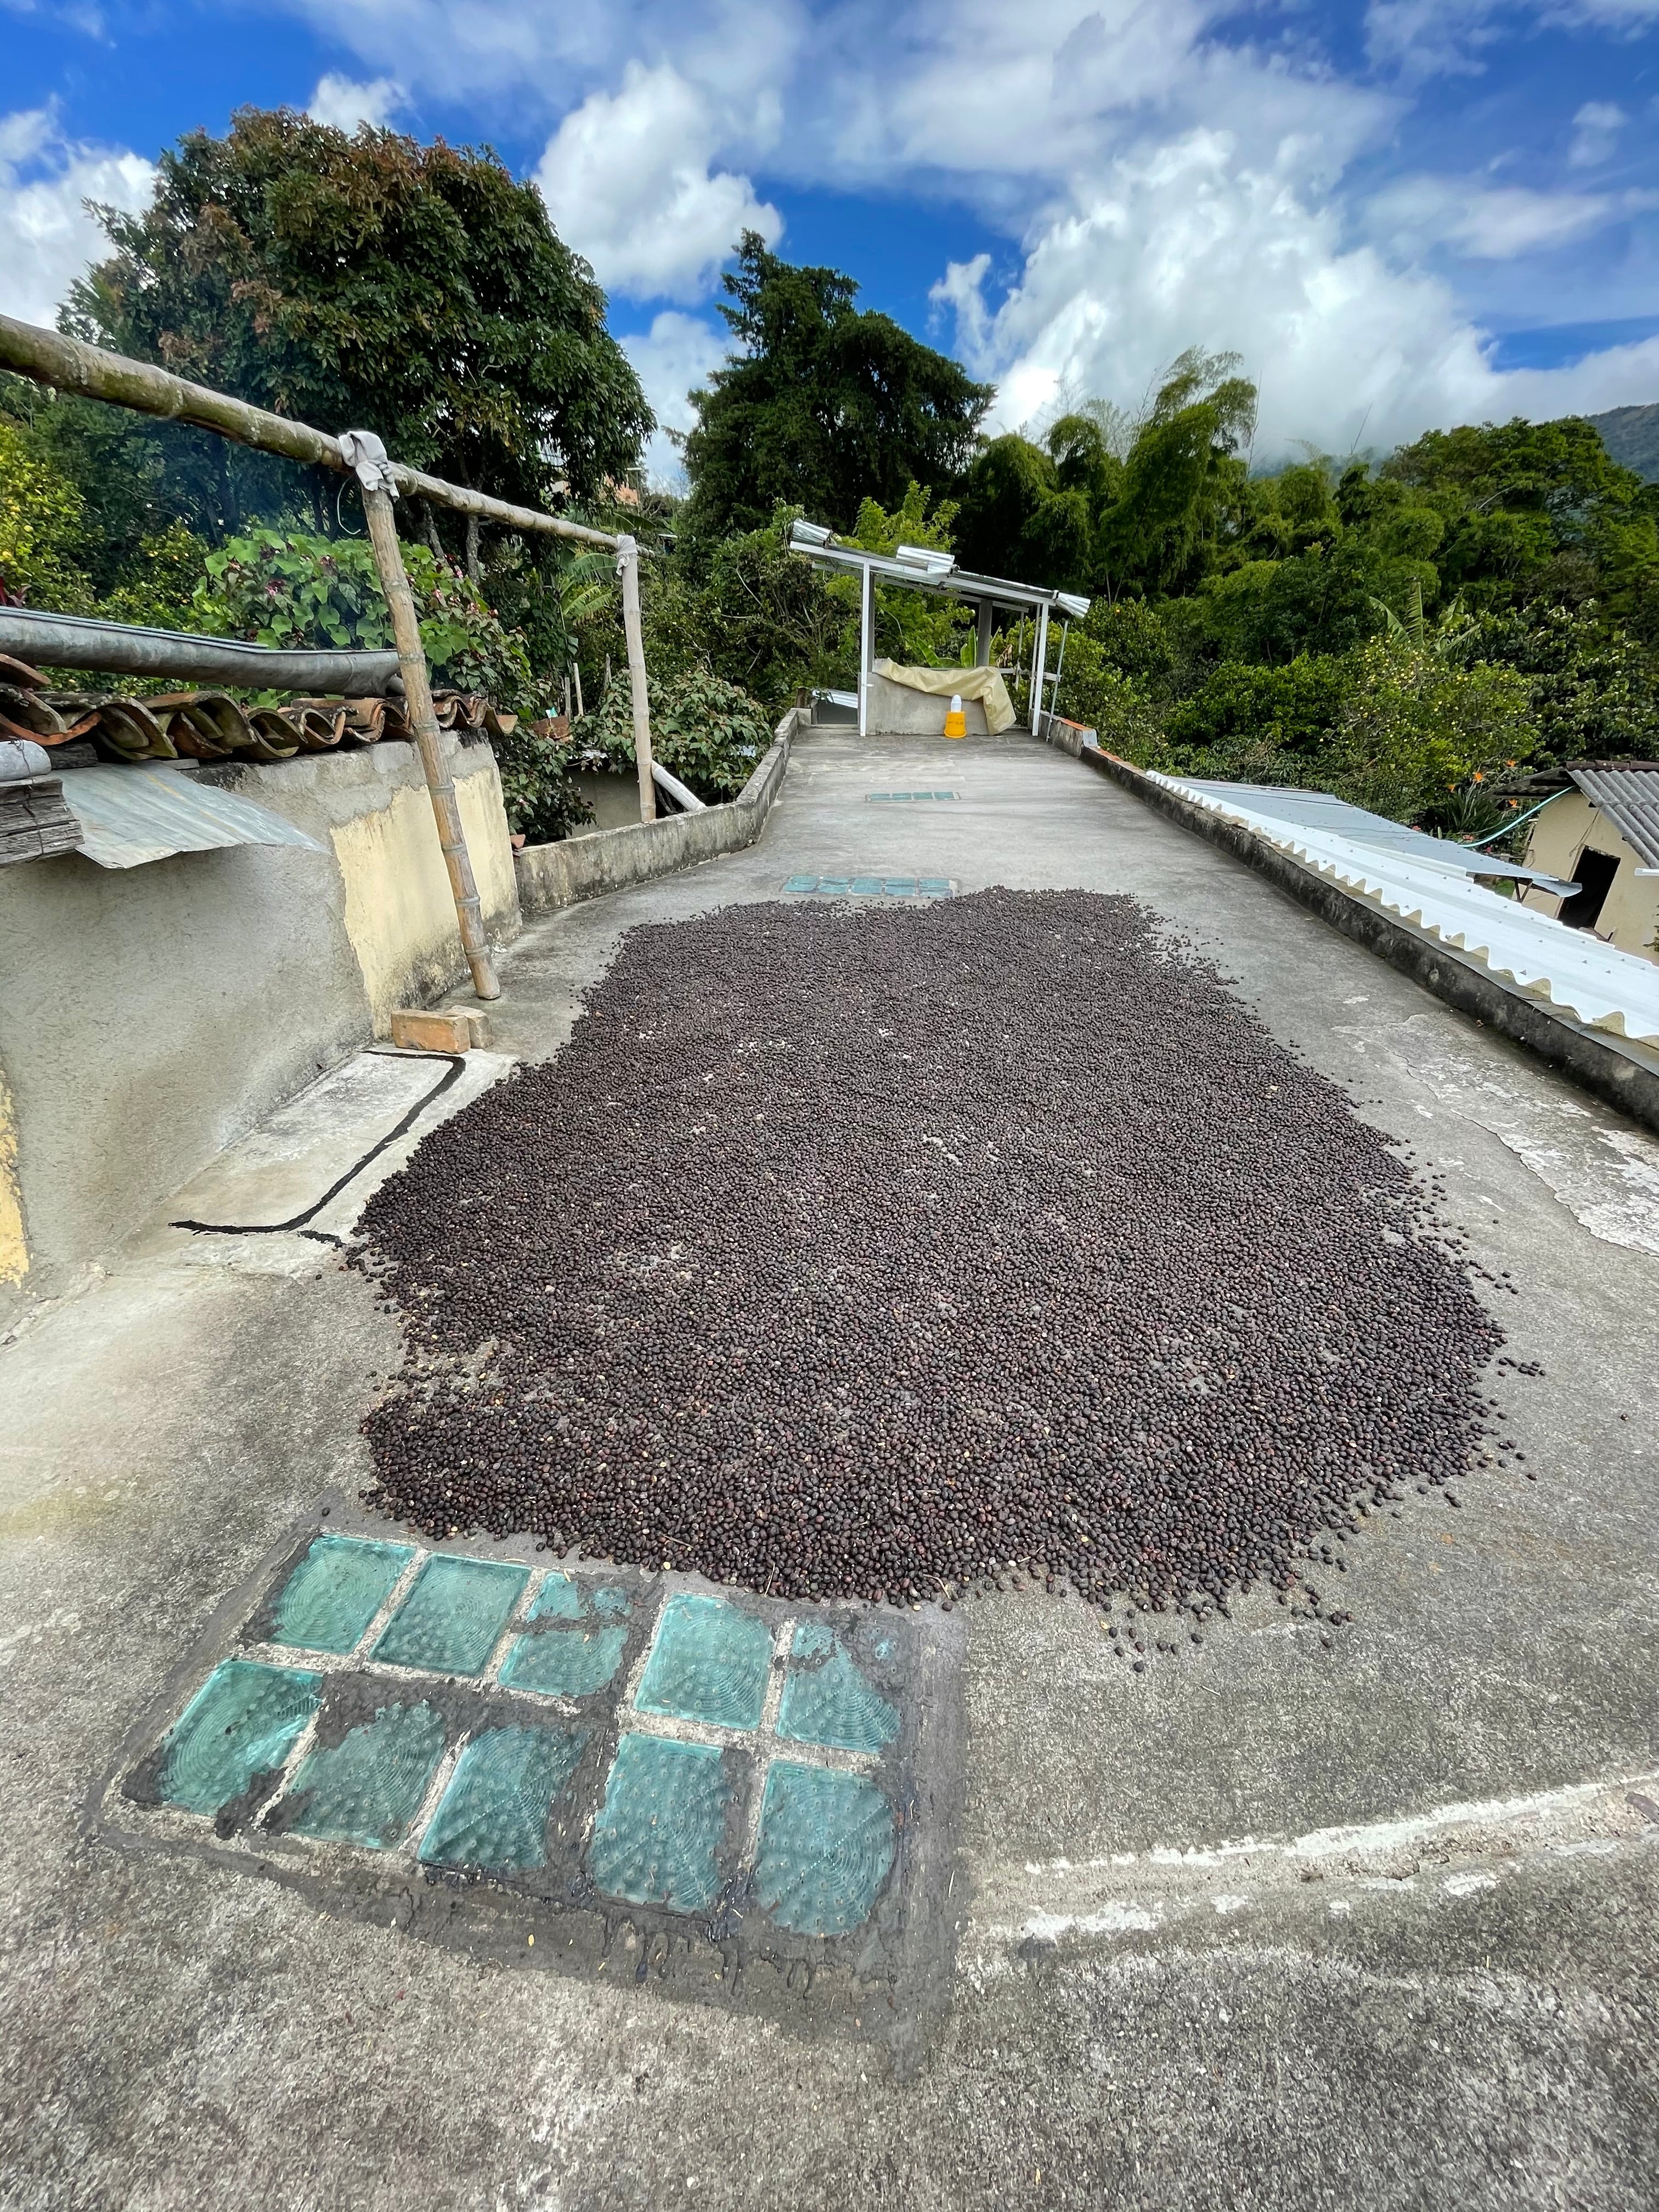 Para que los cafés procesados "naturales" se sequen rápidamente, sobre todo en los primeros días, pueden ponerse en los techos muy soleados de las fincas cafeteras. Juan Pablo "naturales" Colombia.